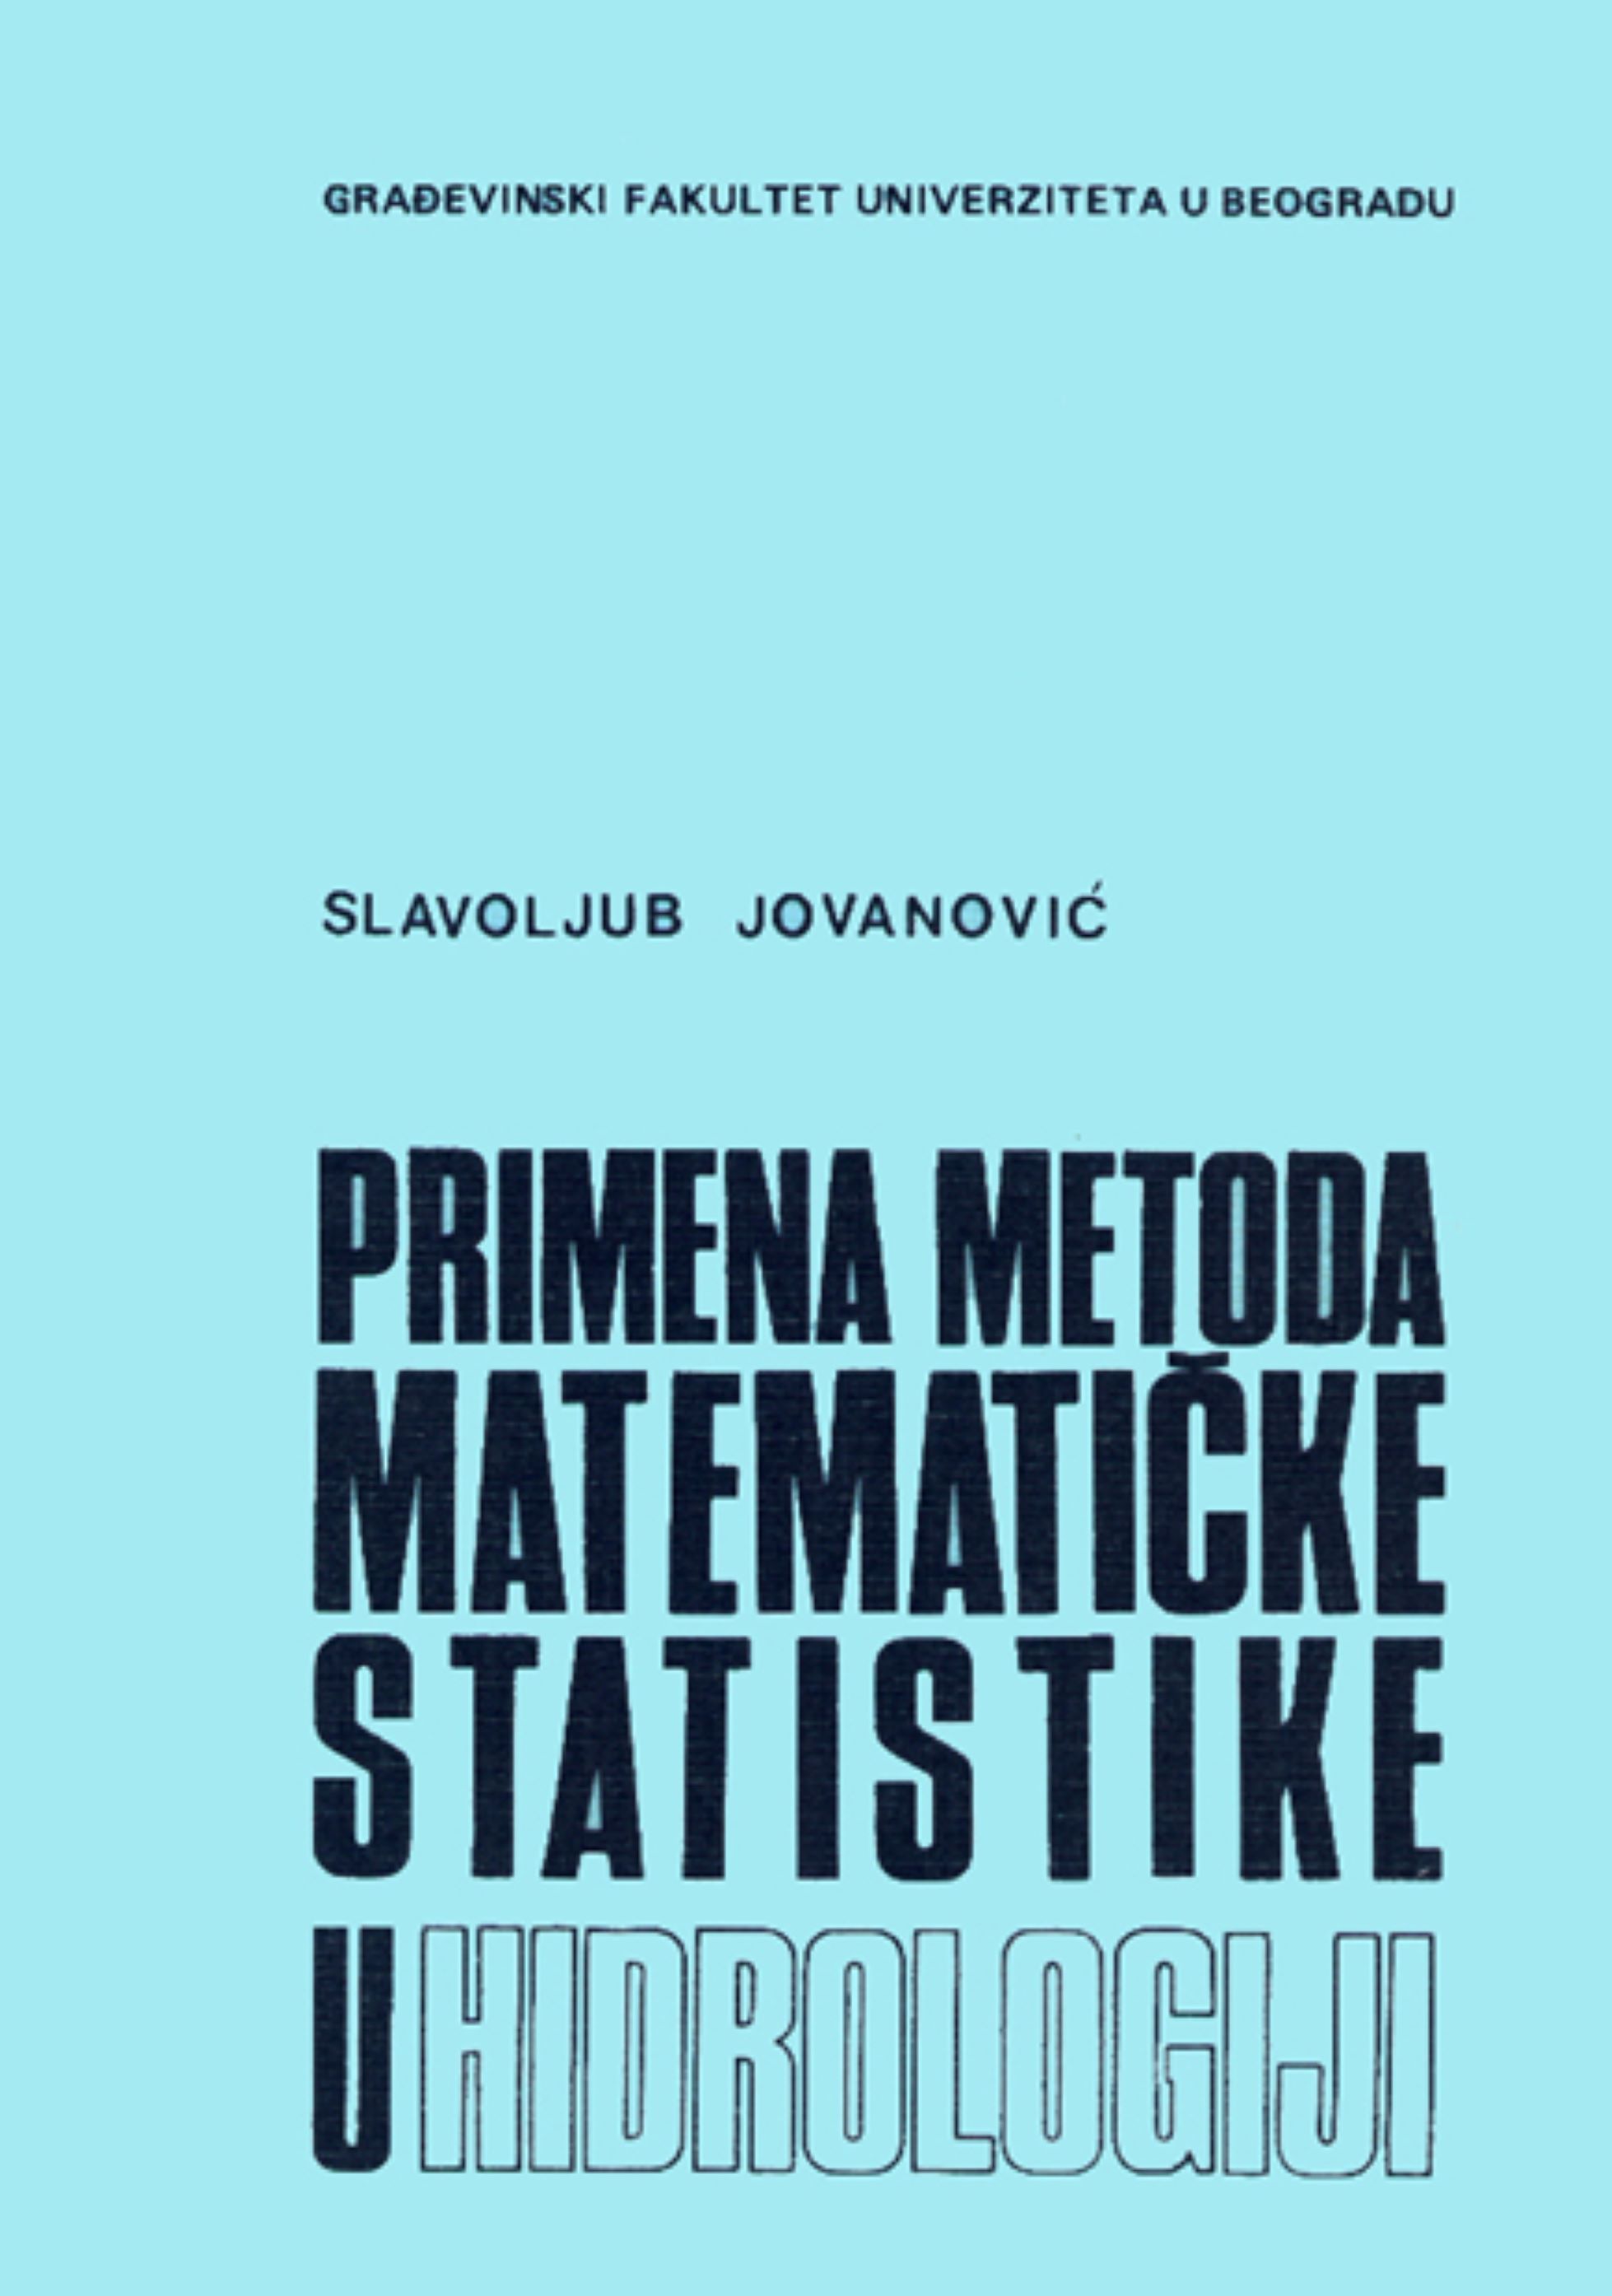 Slavko Jovanovic-primena metoda matematičke statistike u hidrologiji